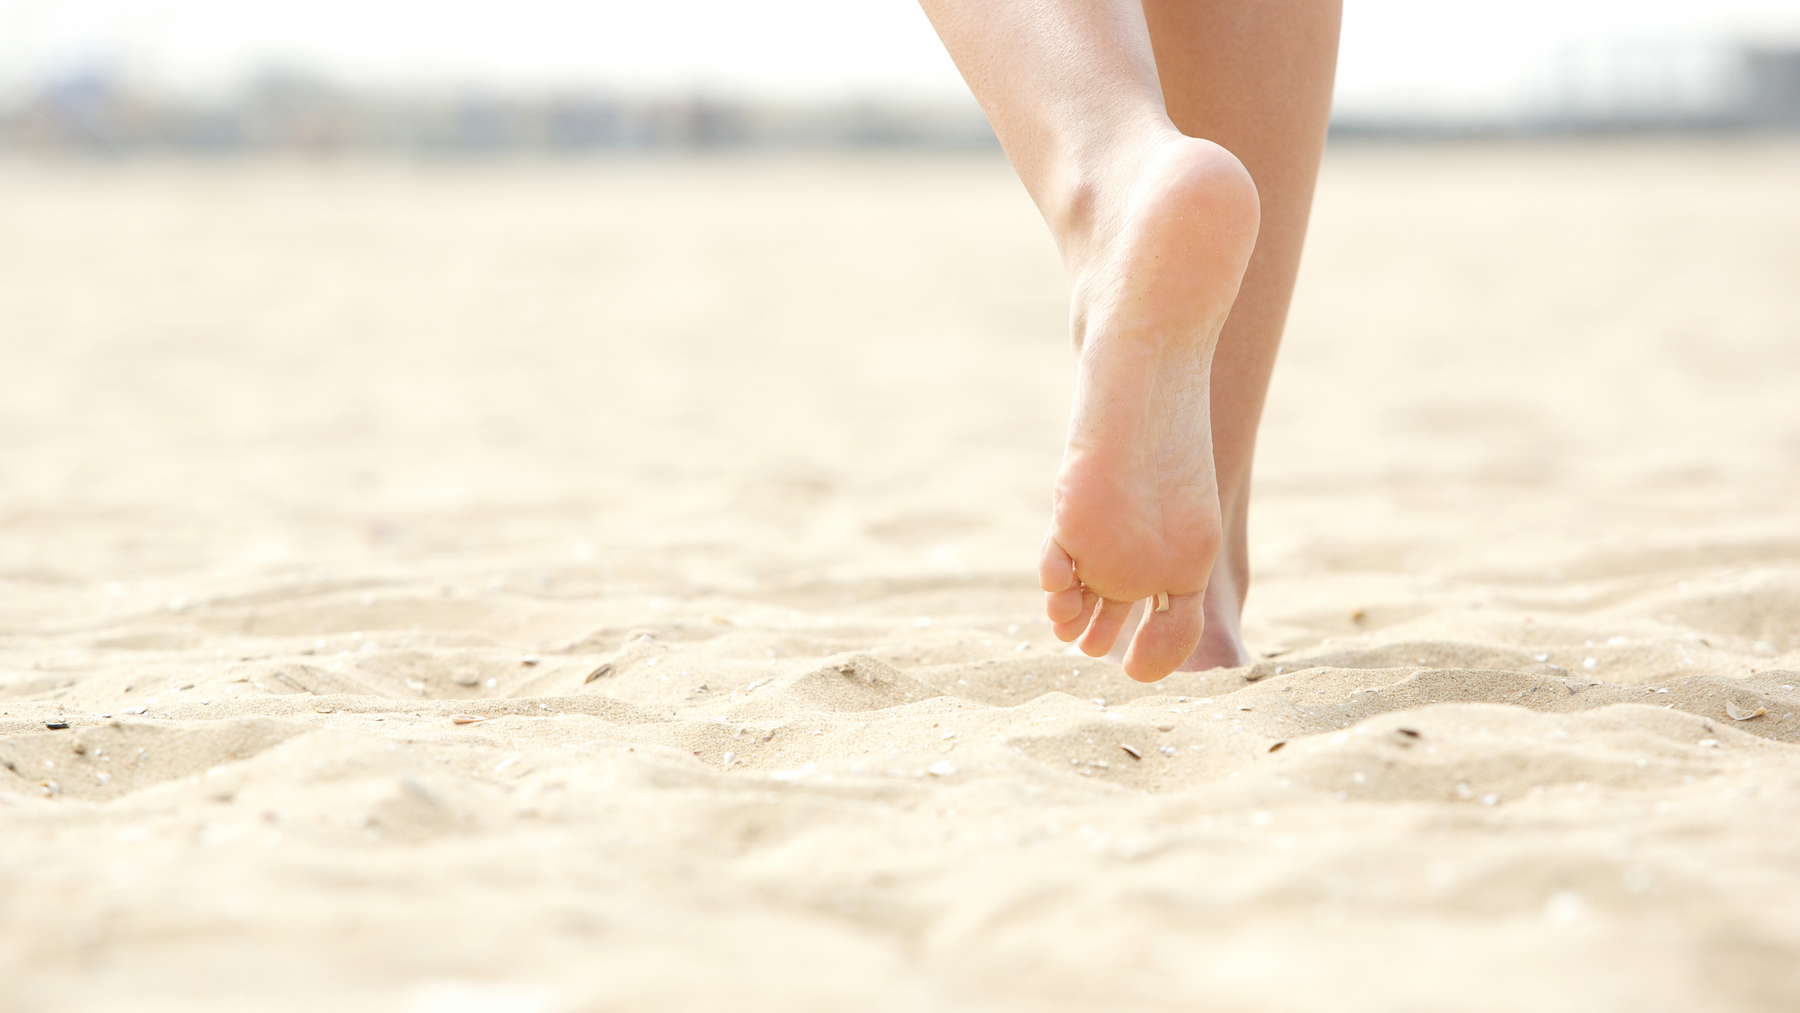 Feet walking barefoot in sand